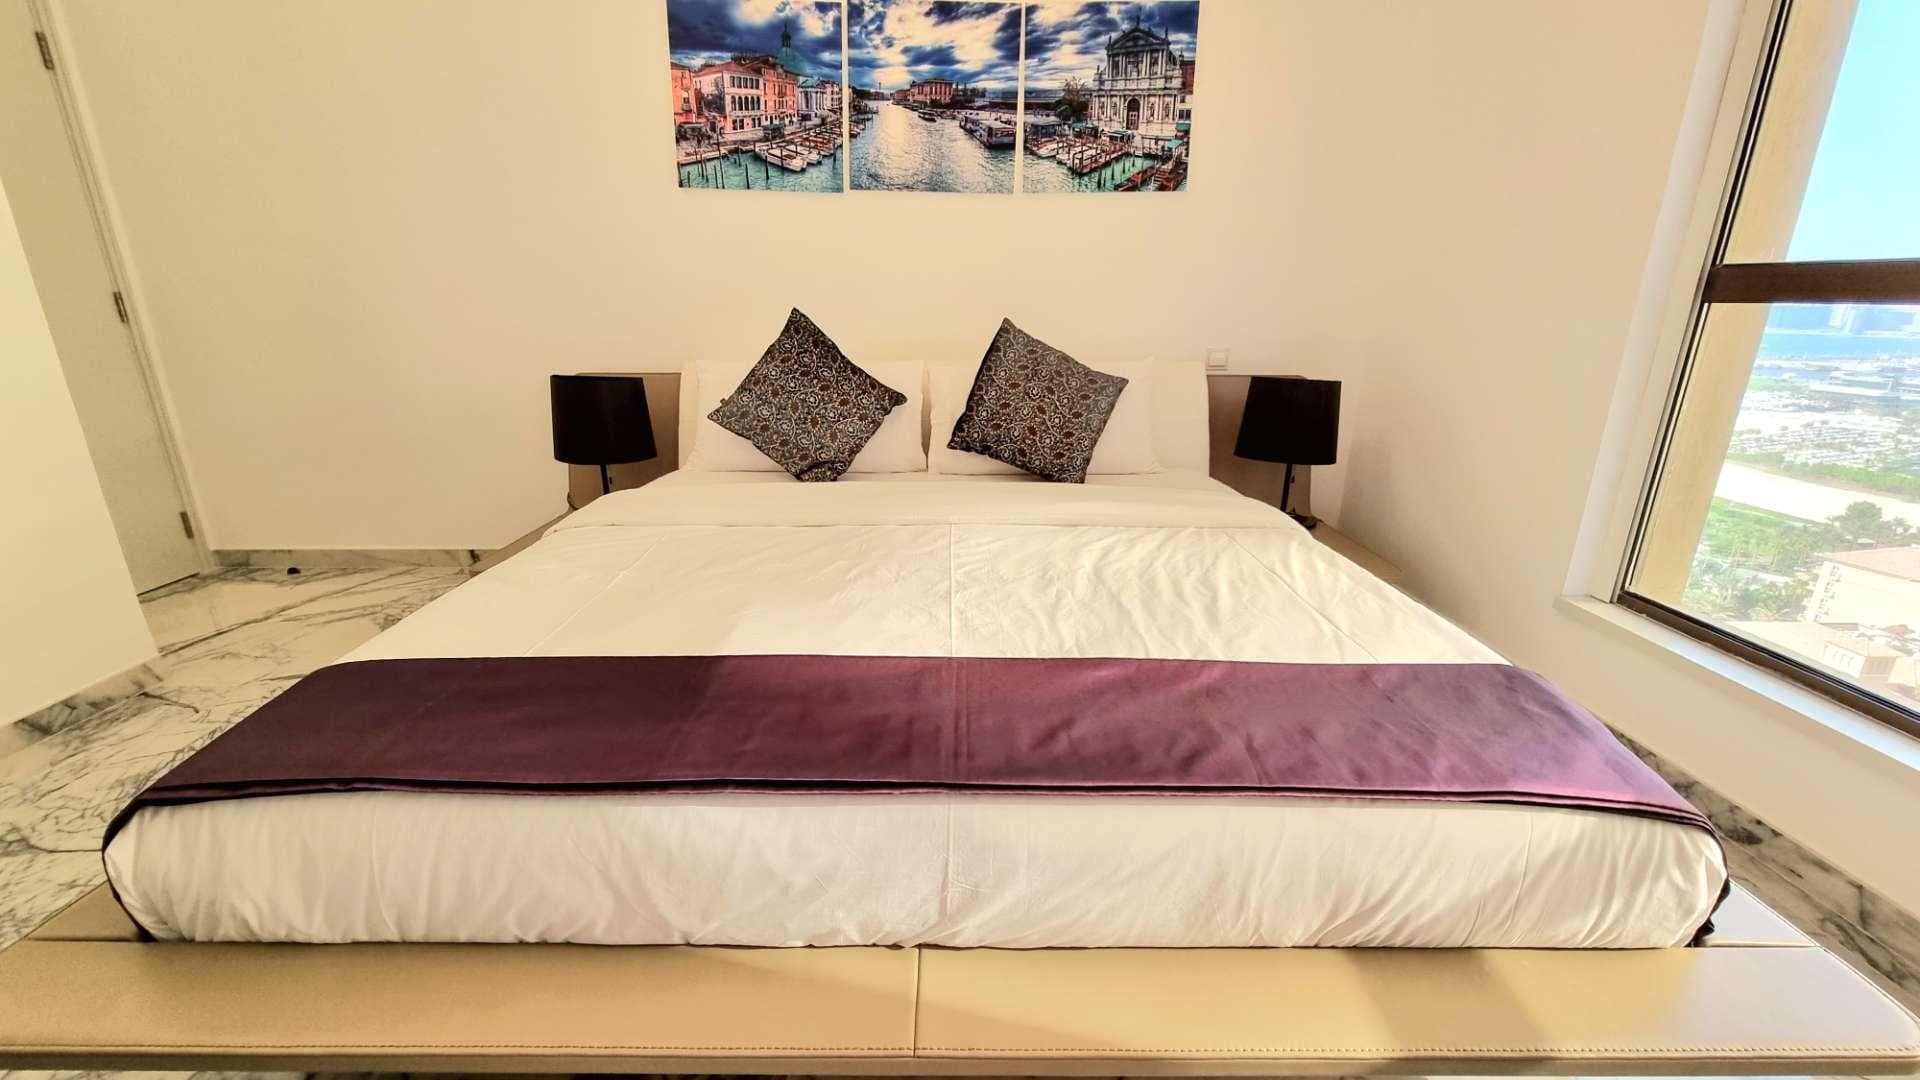 3 Bedroom Apartment For Rent Sadaf Lp32640 Ac697bc89ad5680.jpg